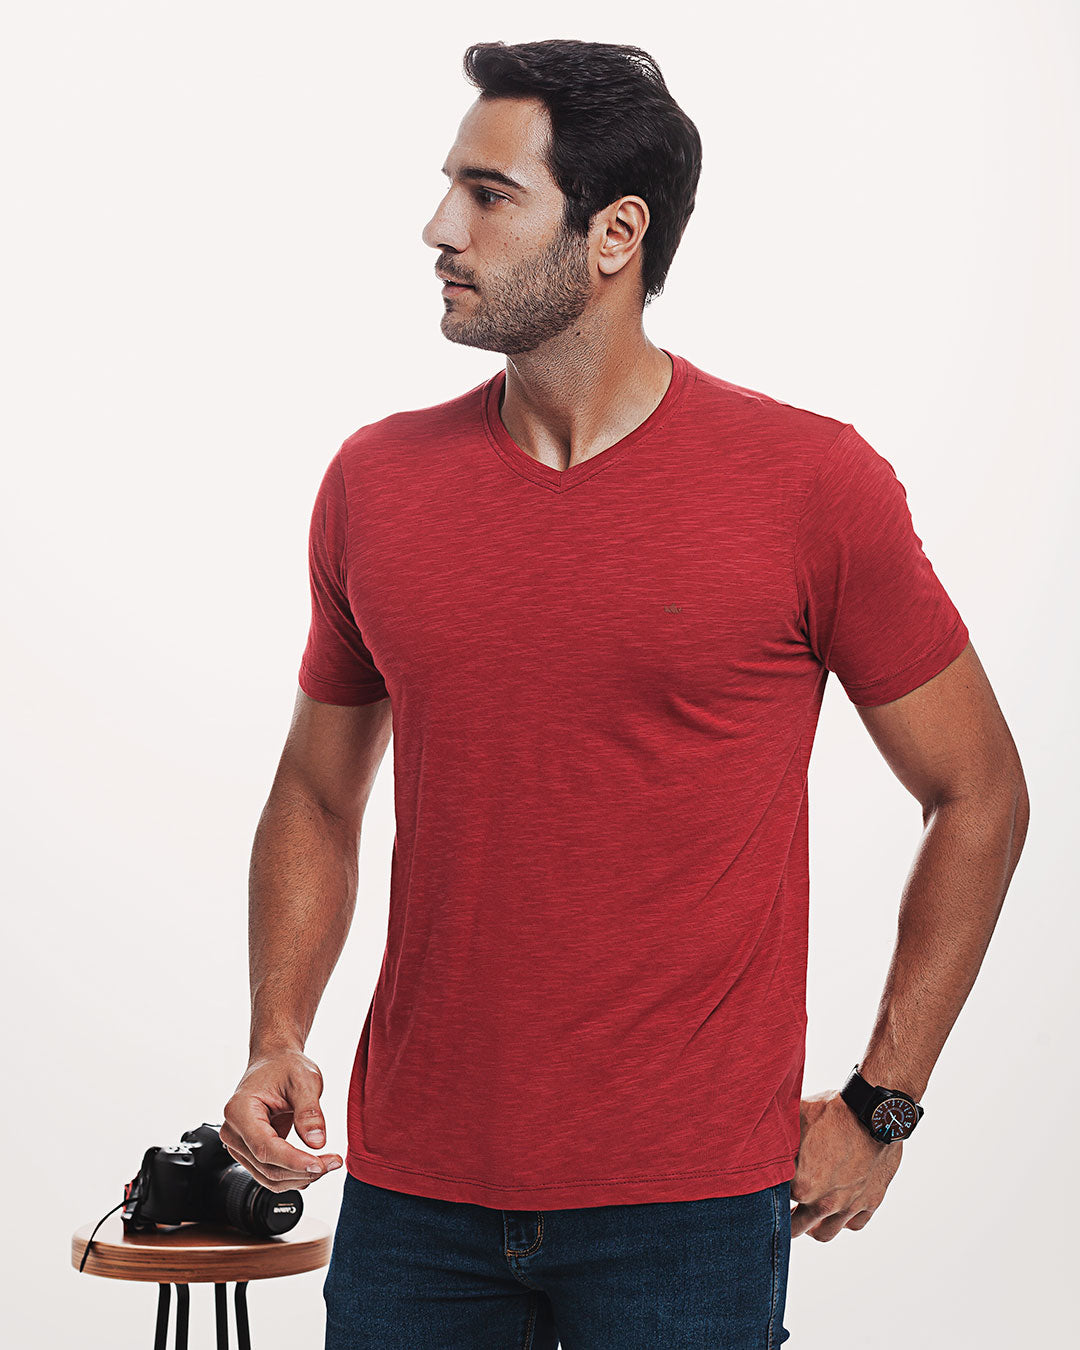 Camiseta Algodão Ultraleve Vermelha Ezutus Compre roupas estilosas na Amorope, site seguro, frete grátis e parcelamento sem juros. Moda feminina e masculina num só lugar.